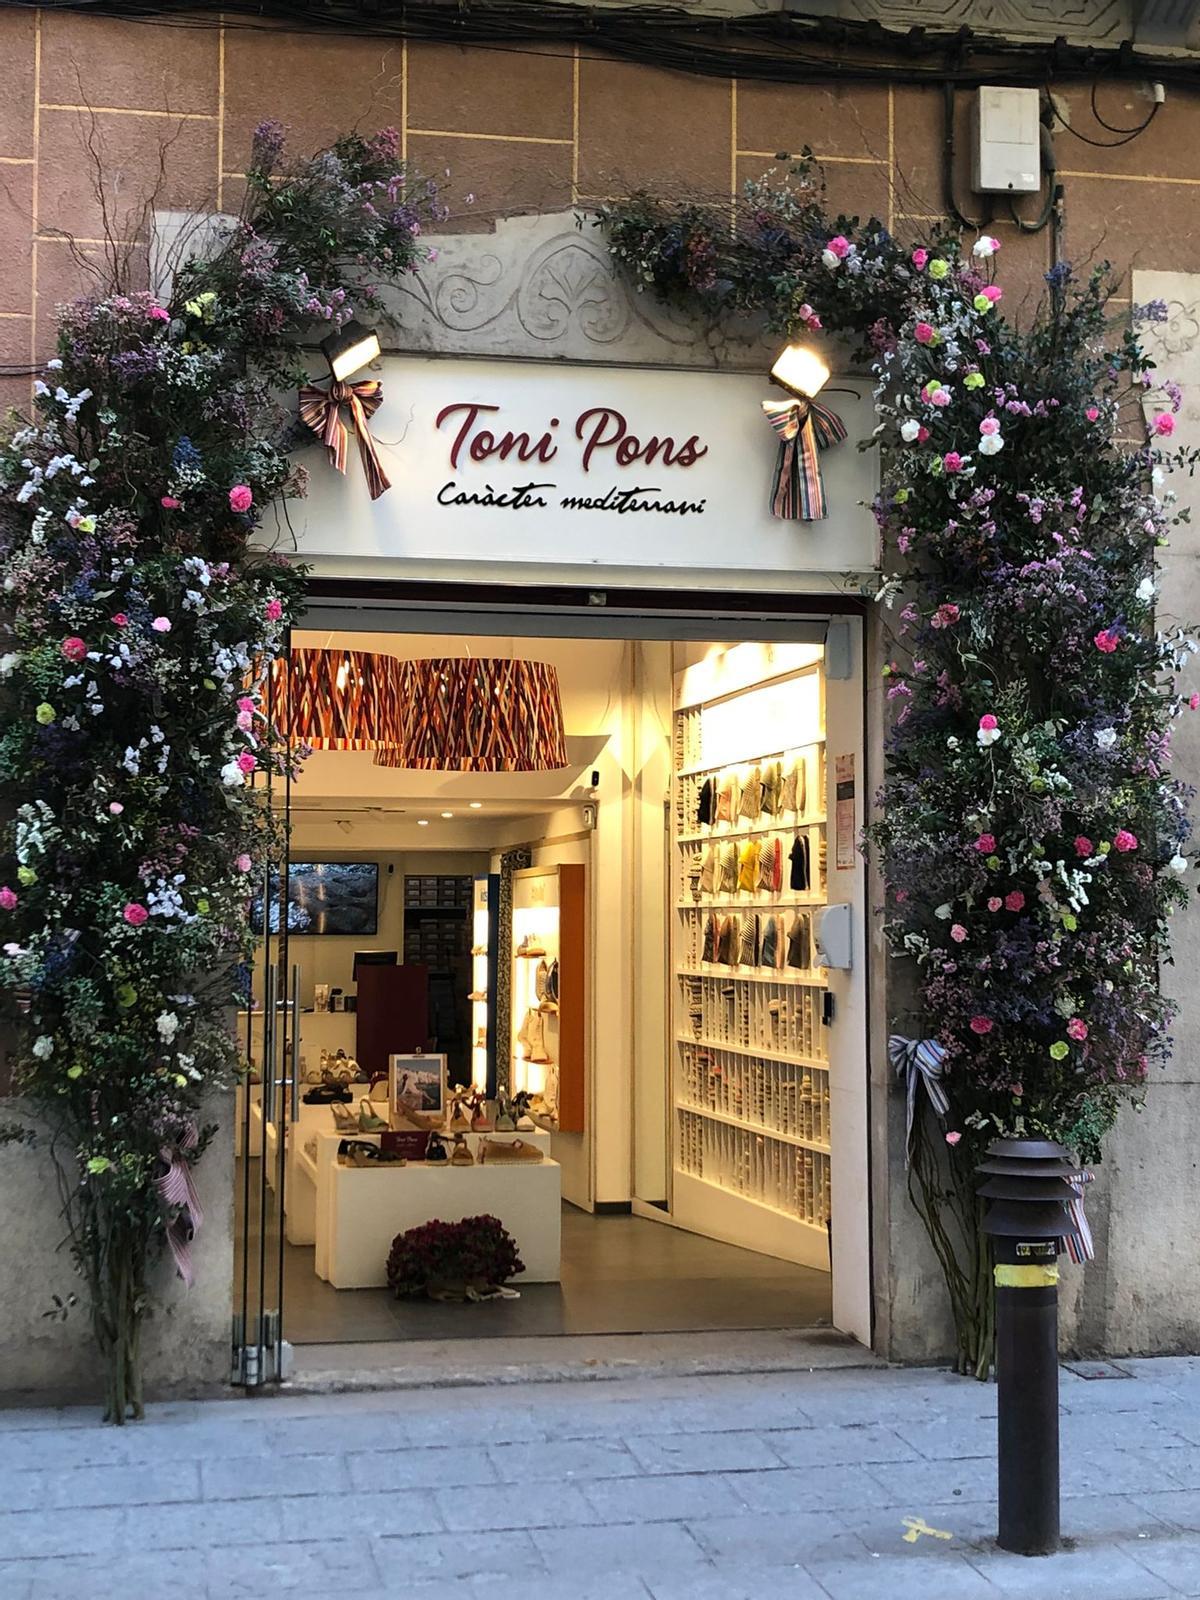 La botiga Toni Pons del carrer Santa Clara de Girona va guanyar el concurs de l'any passat.